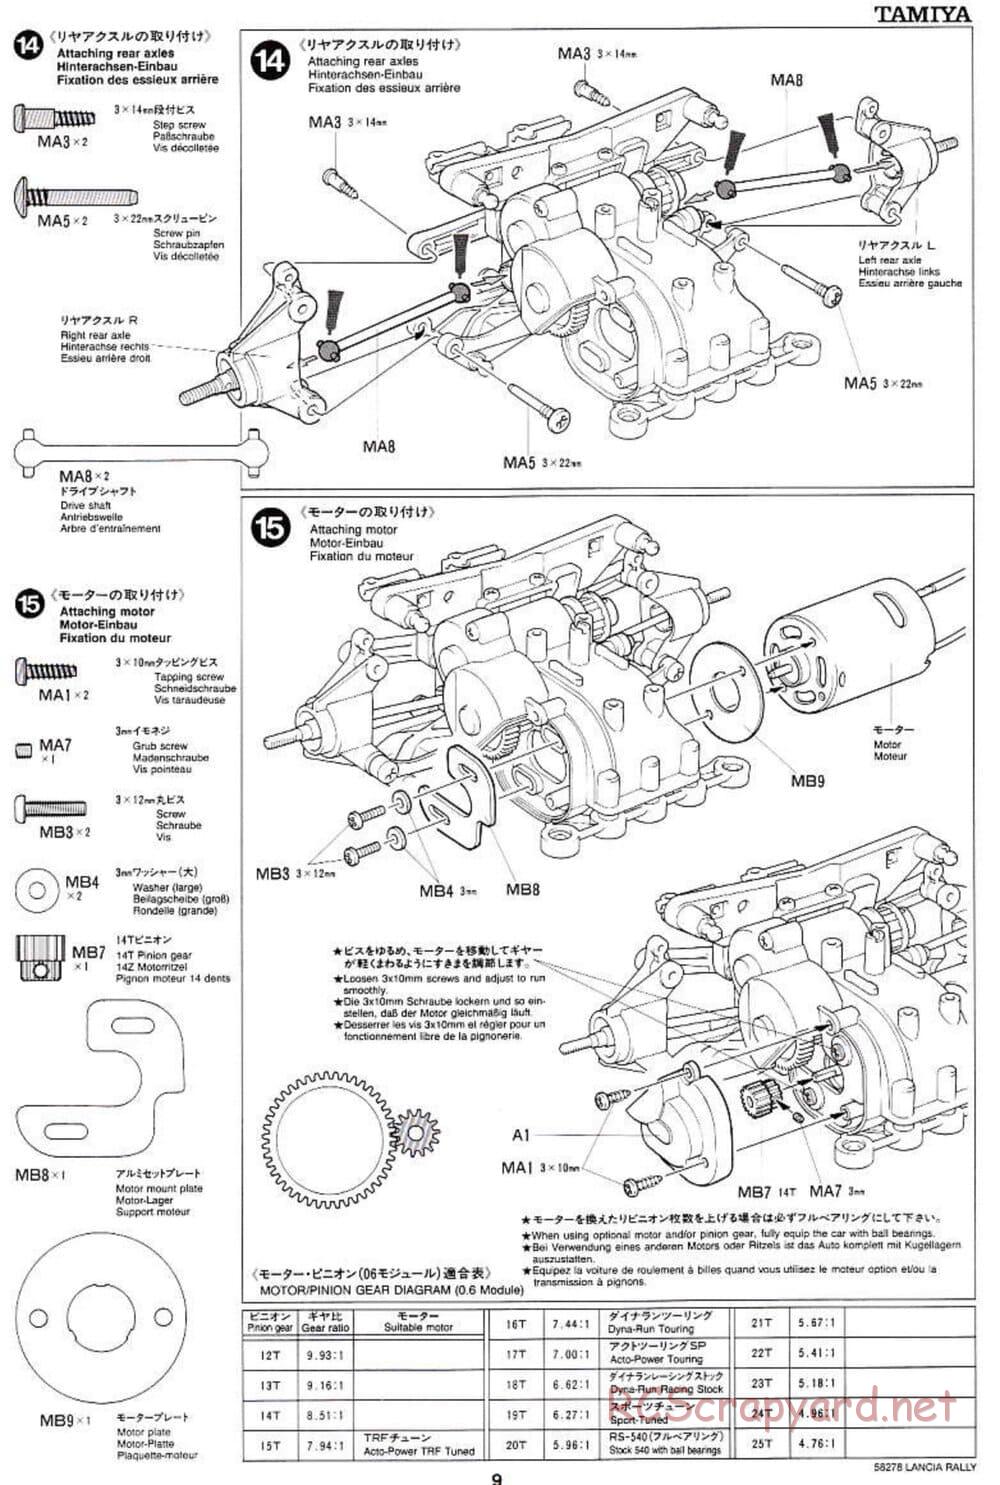 Tamiya - Lancia 037 Rally - TA-03RS Chassis - Manual - Page 9